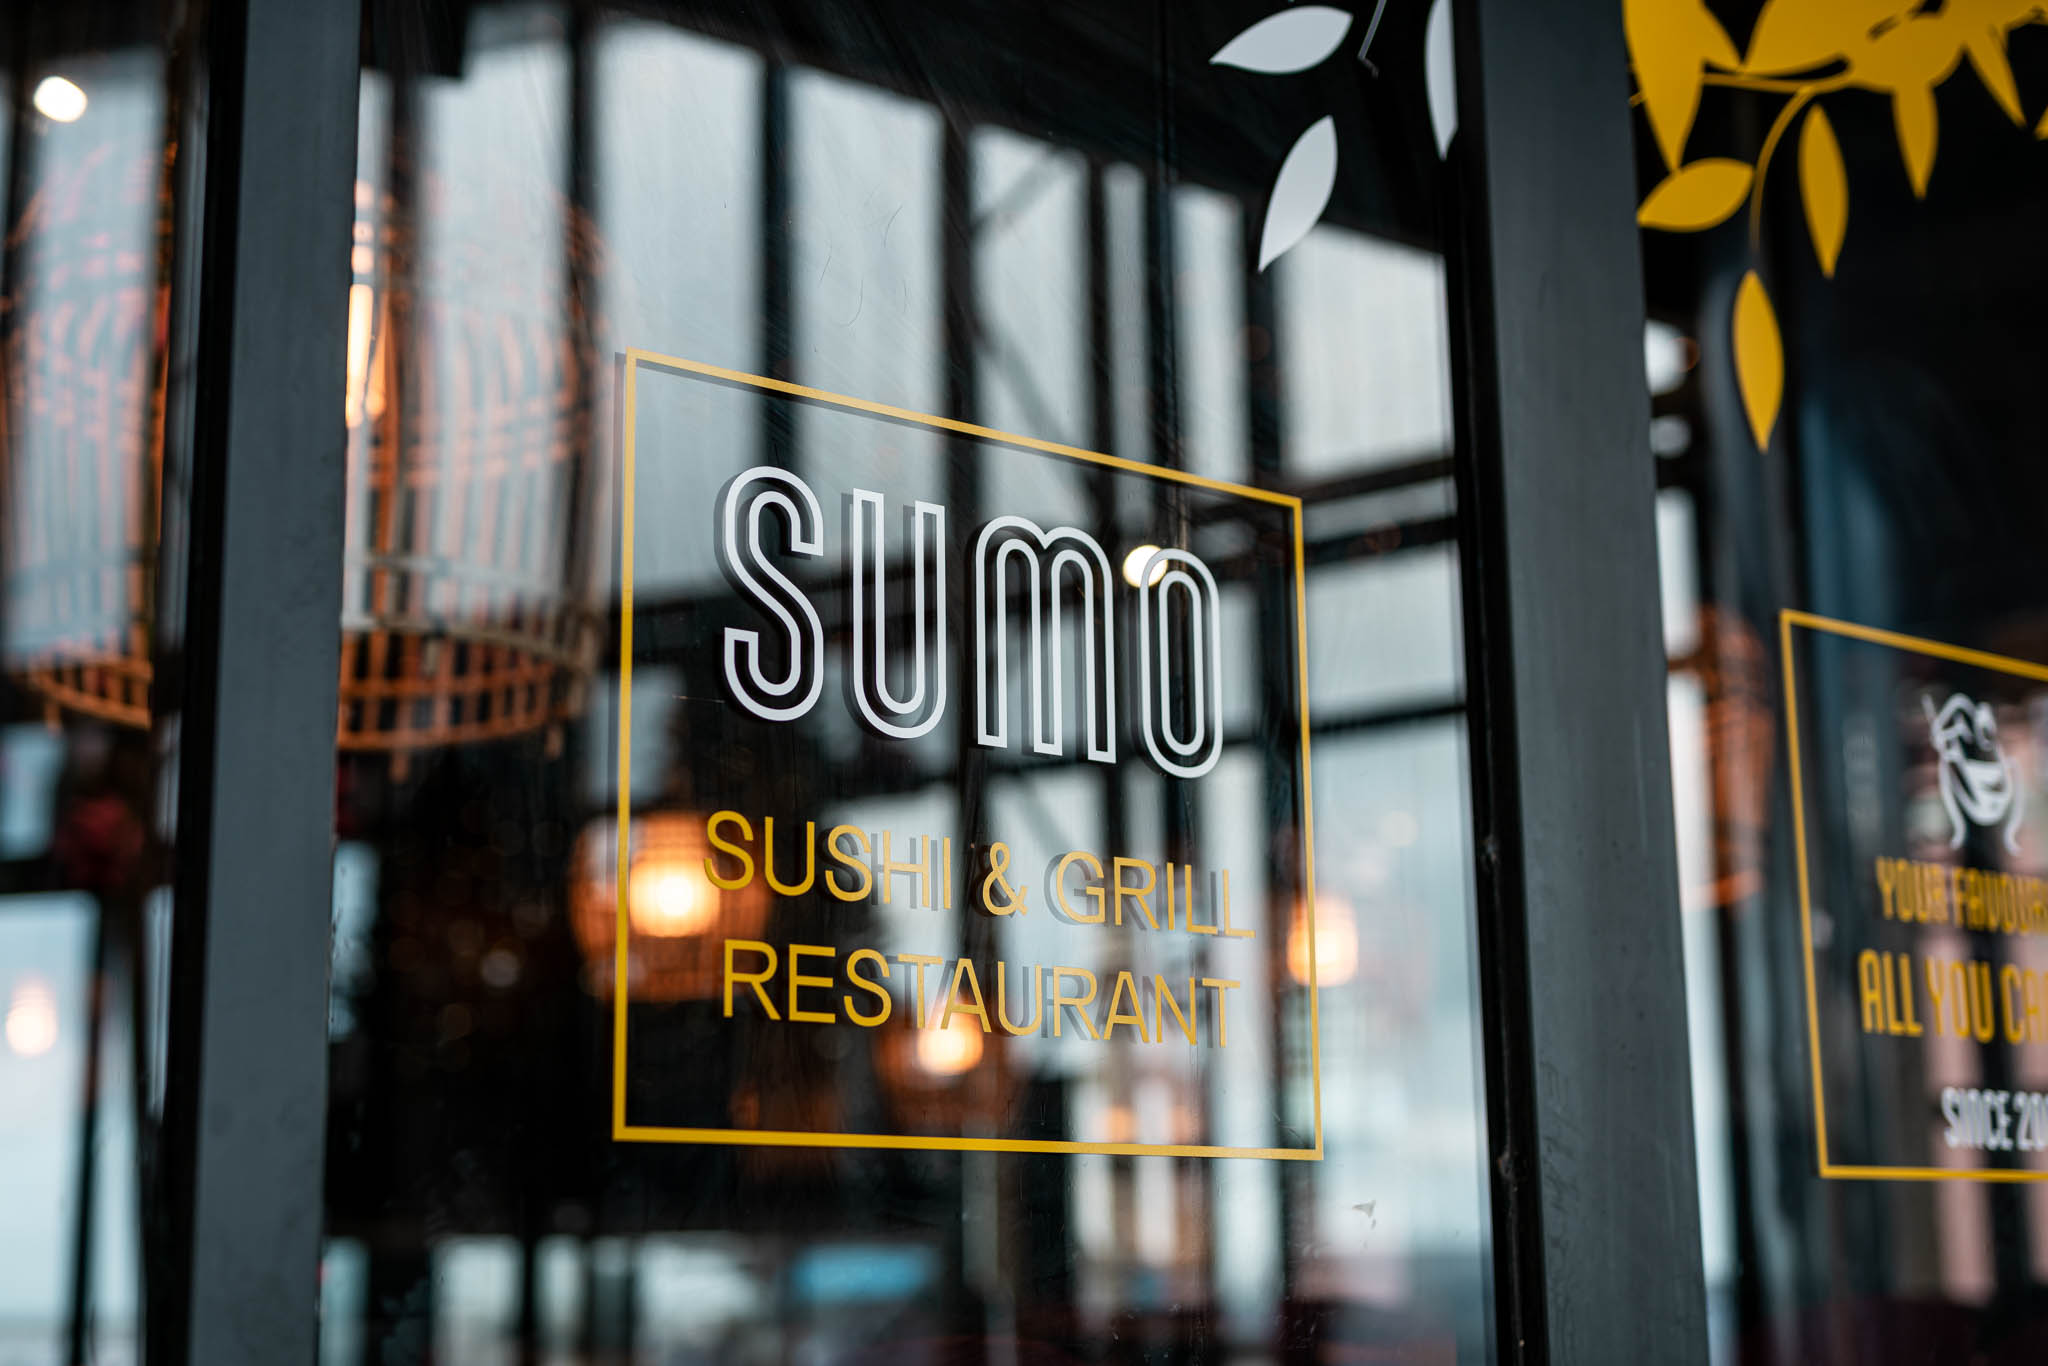 (c) Restaurantsumo.com